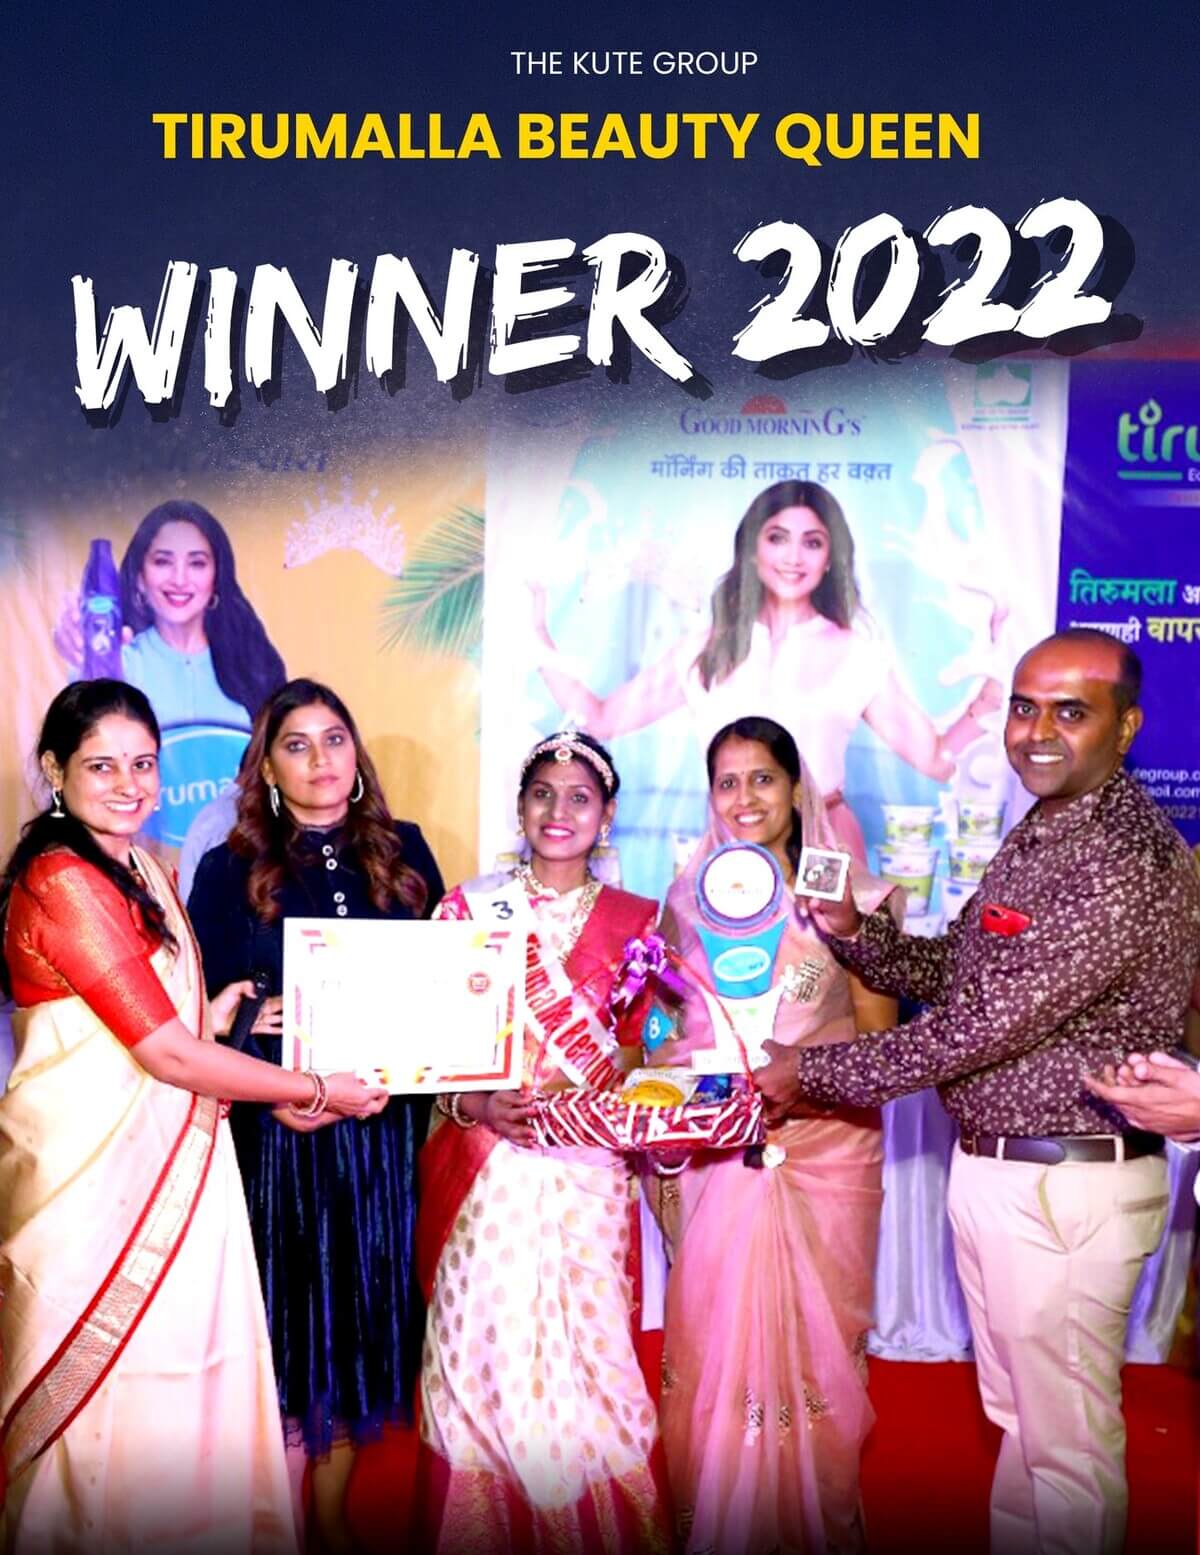 Tirumalla Beauty Queen Contest in Aurangabad